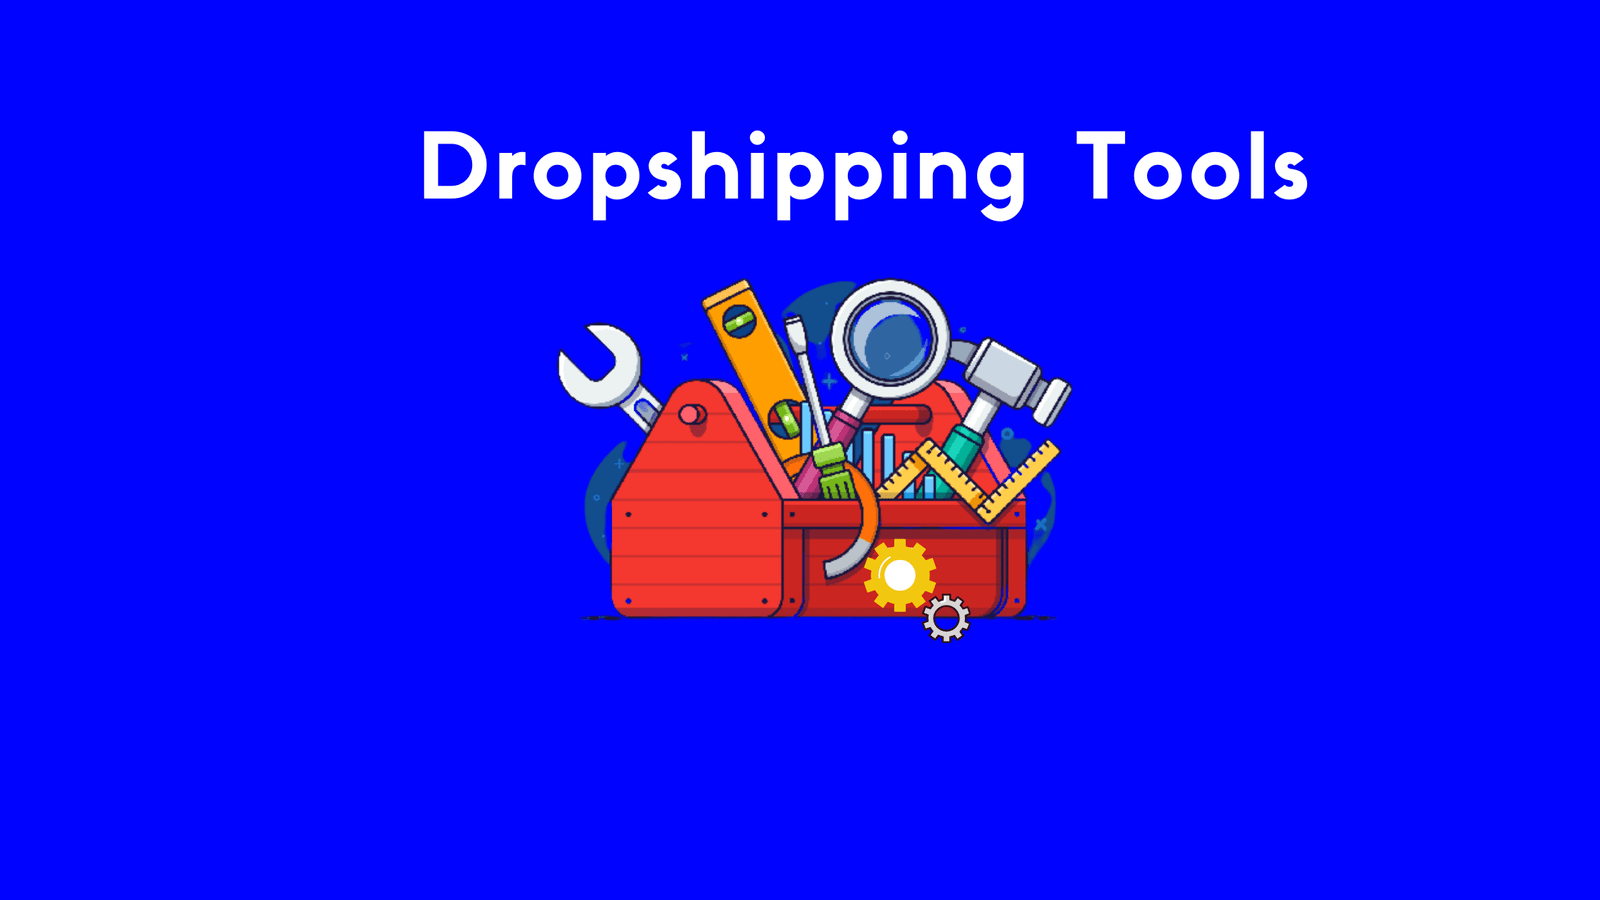 Dropshipping Tools (2) (1) (1)